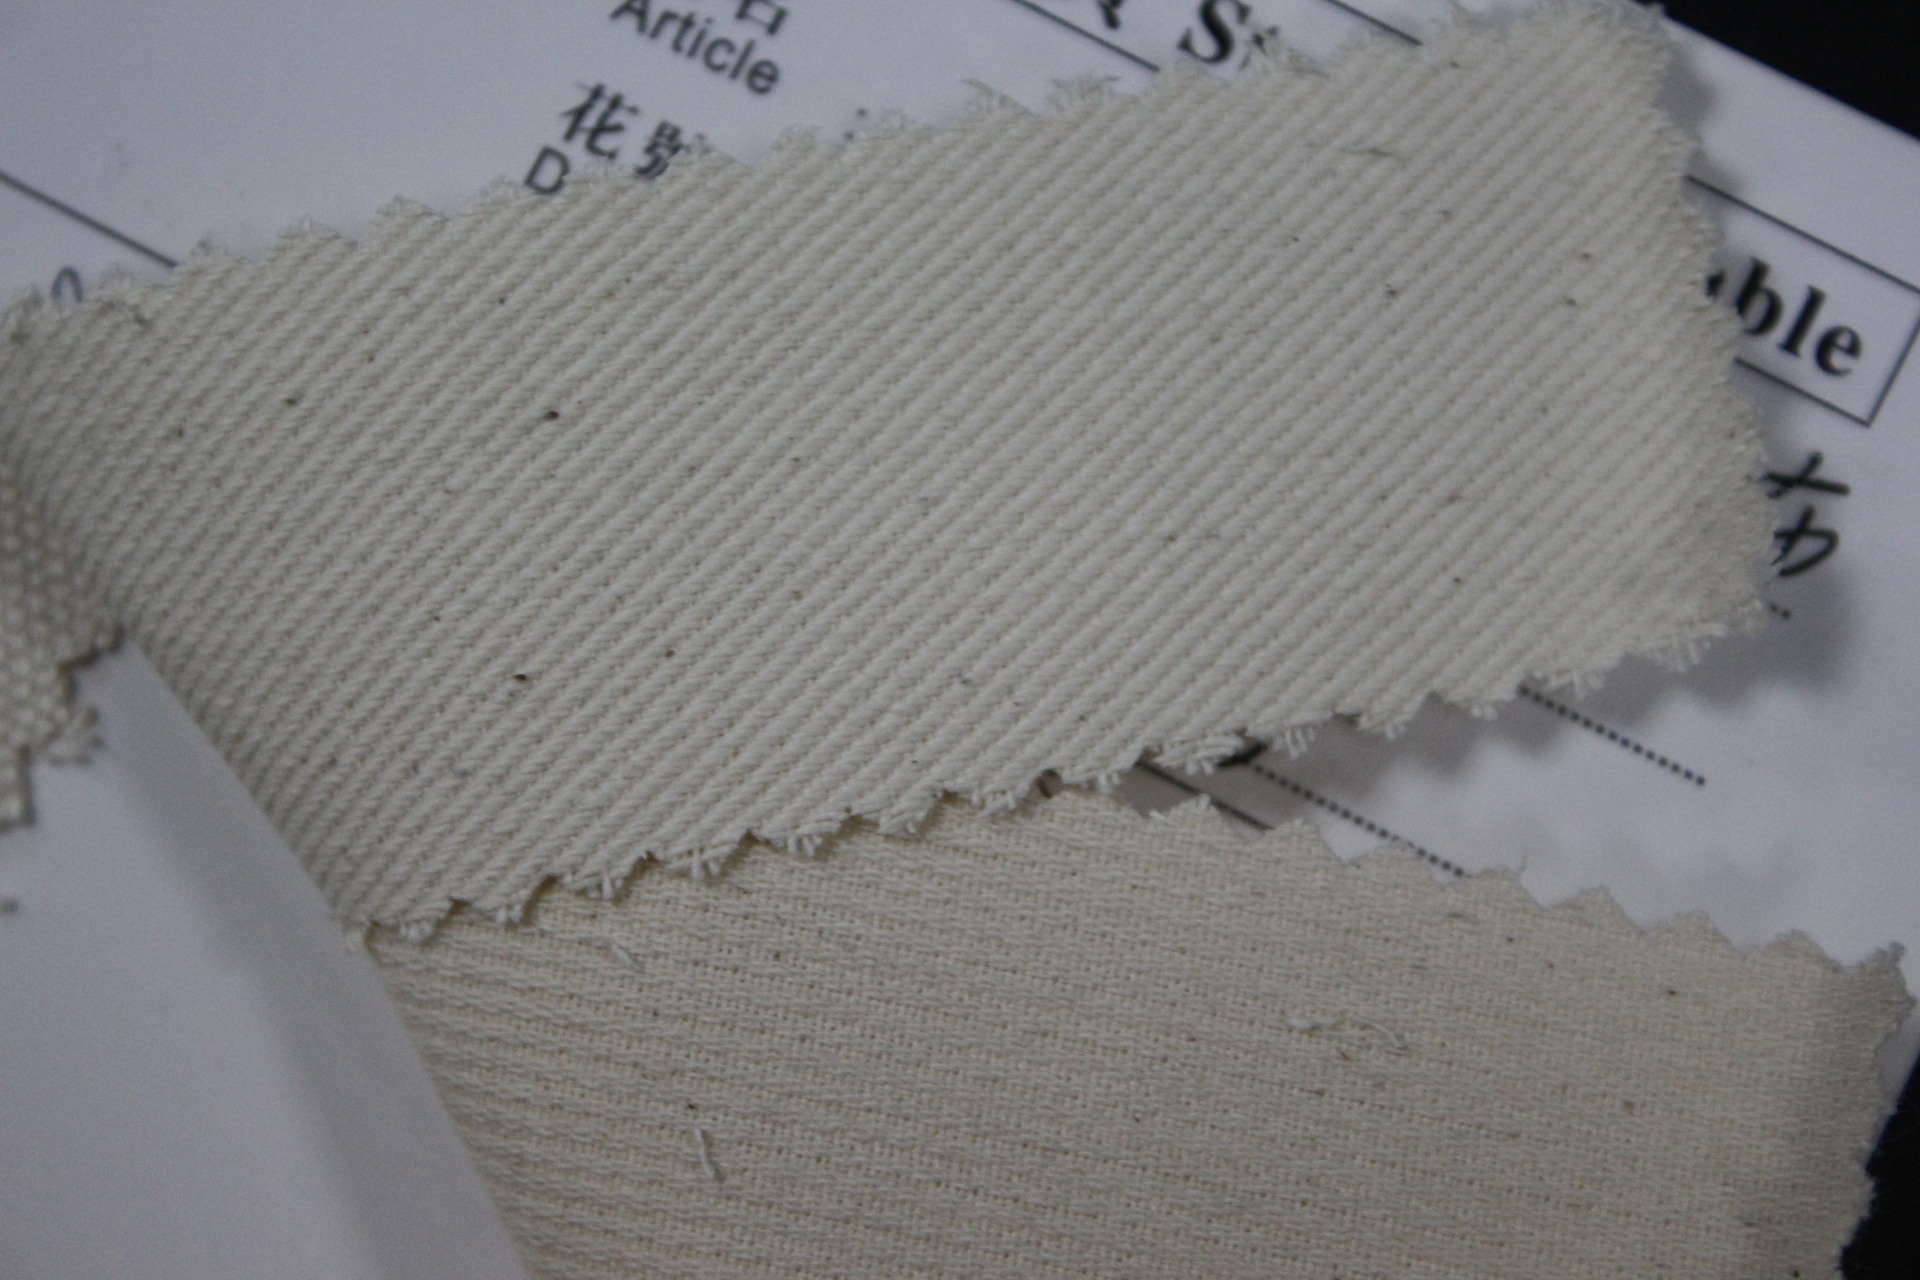 全棉平纹斜纹类布料工厂直销批发有机棉胚布价格可提供证书